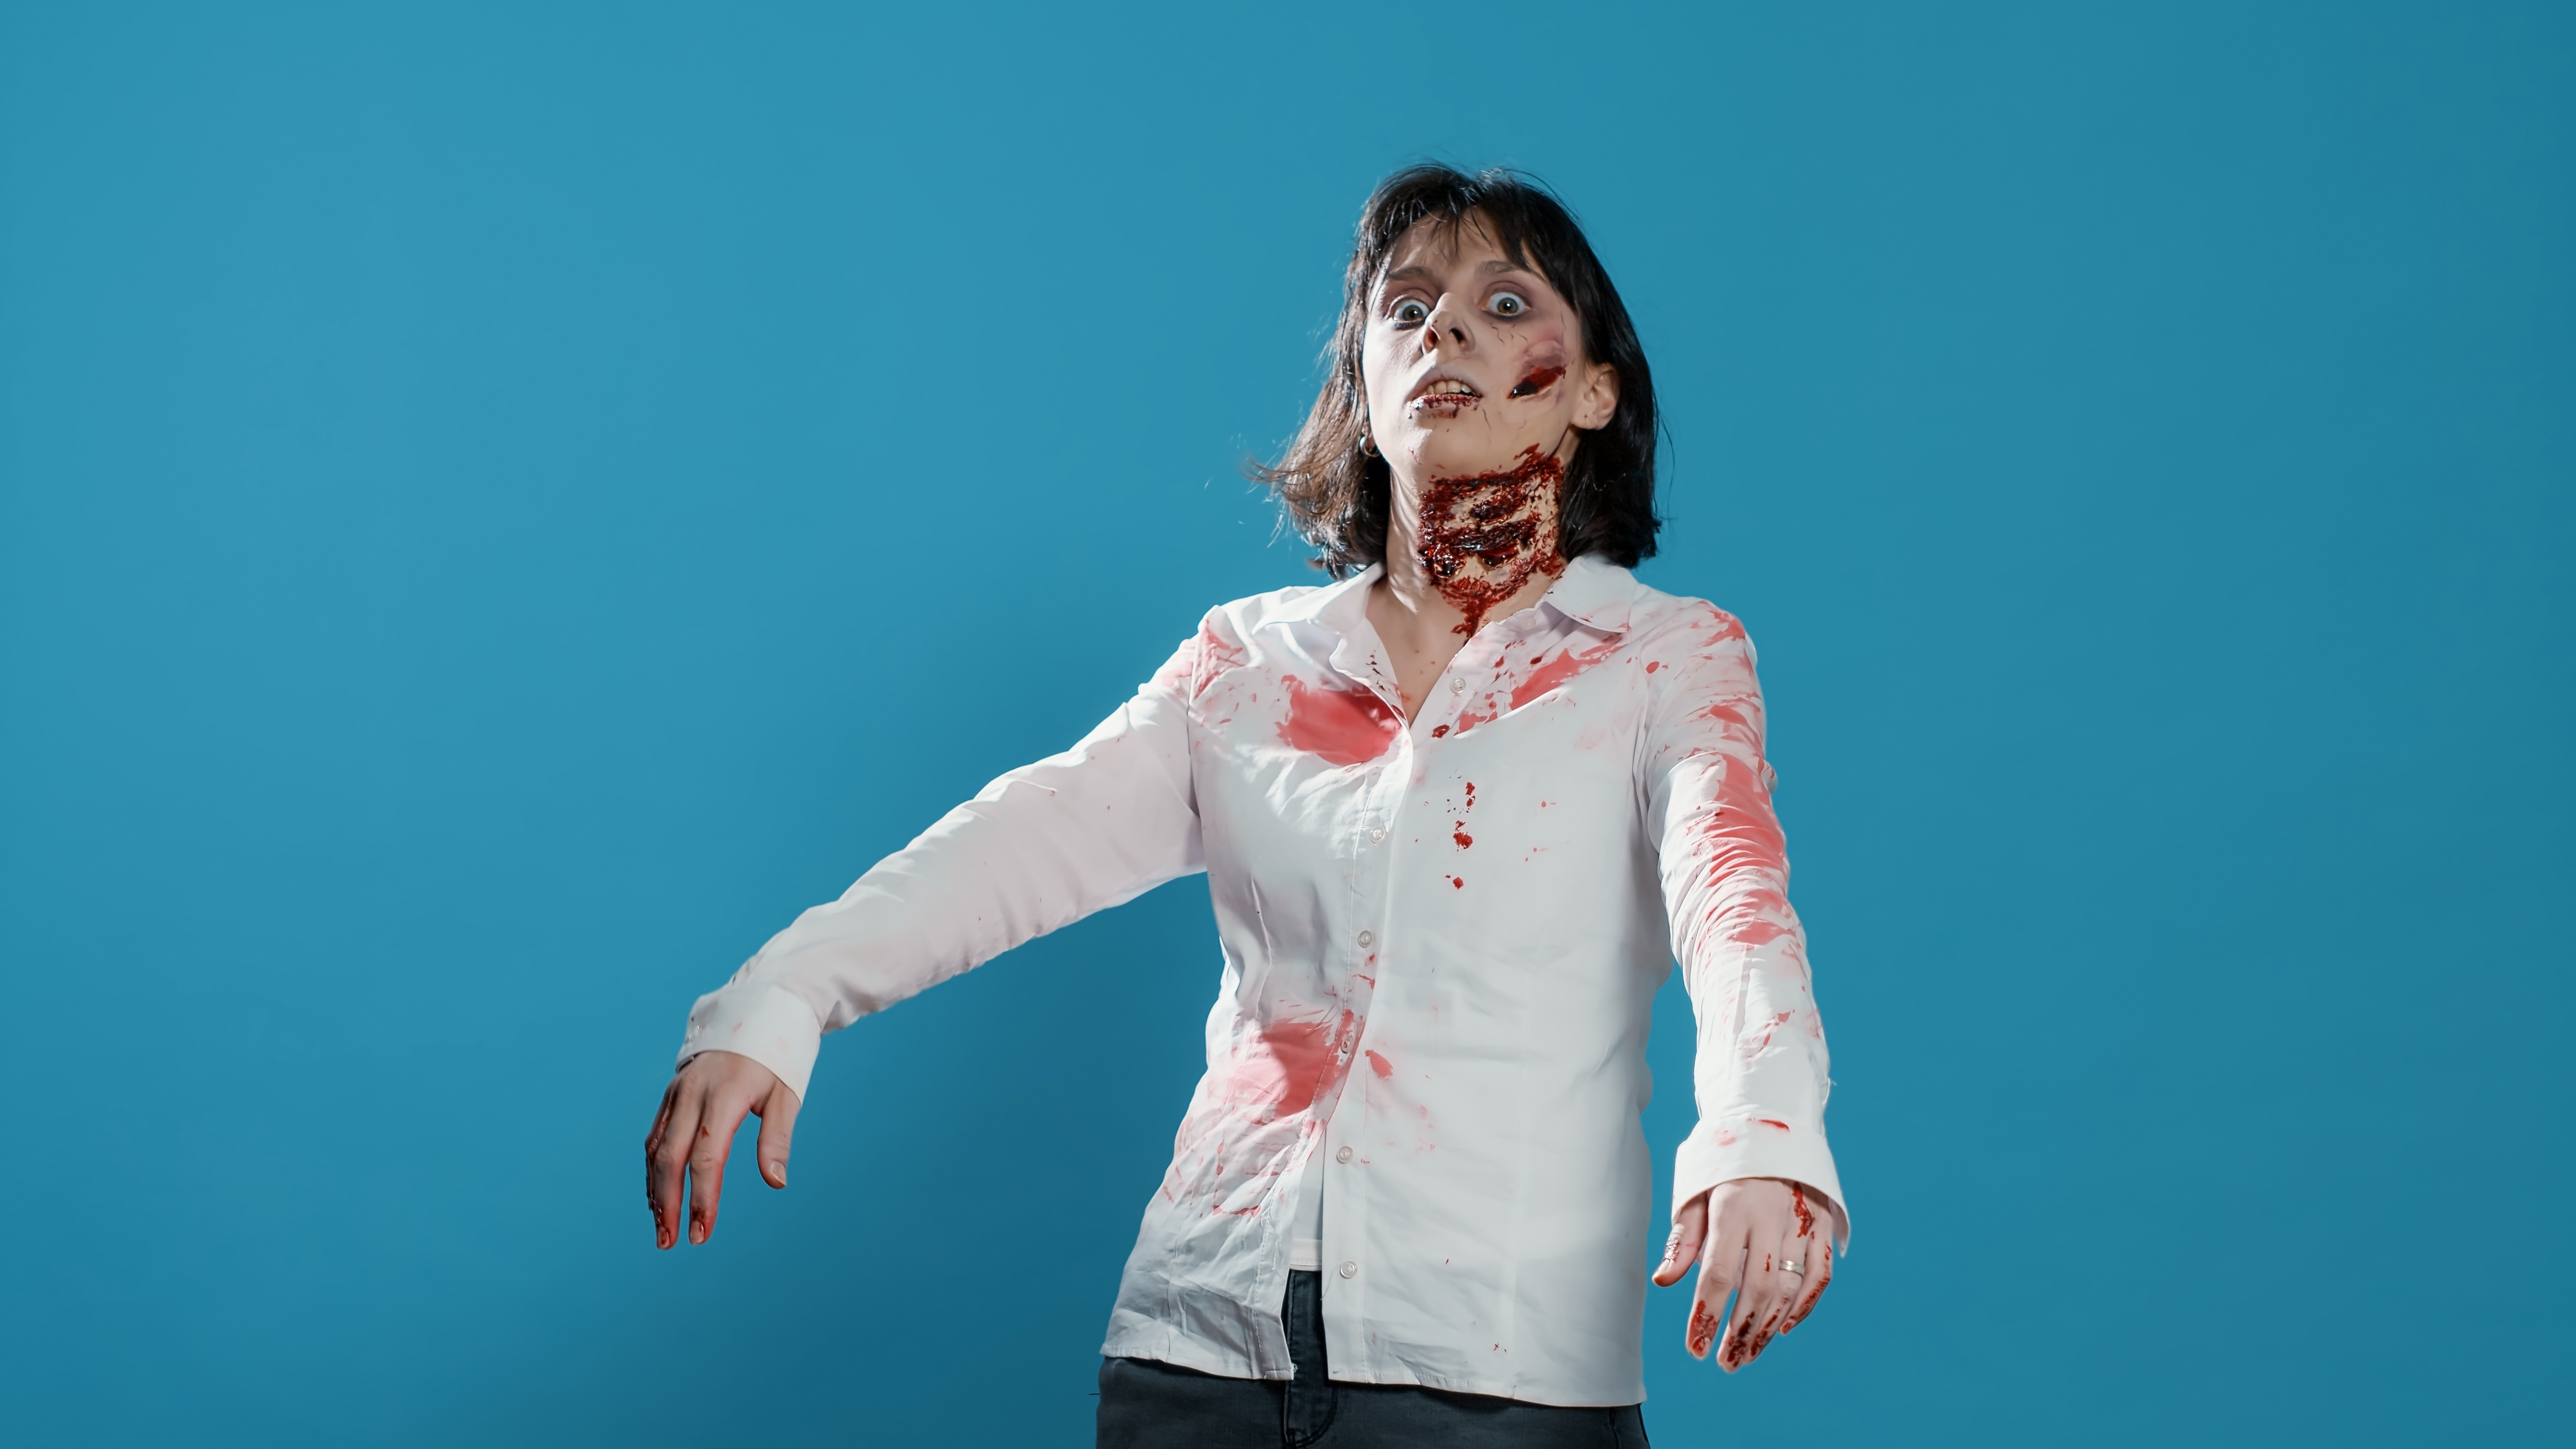 Женщина, одетая и изображающая из себя зомби, с пятнами крови на рубашке и раной на шее.